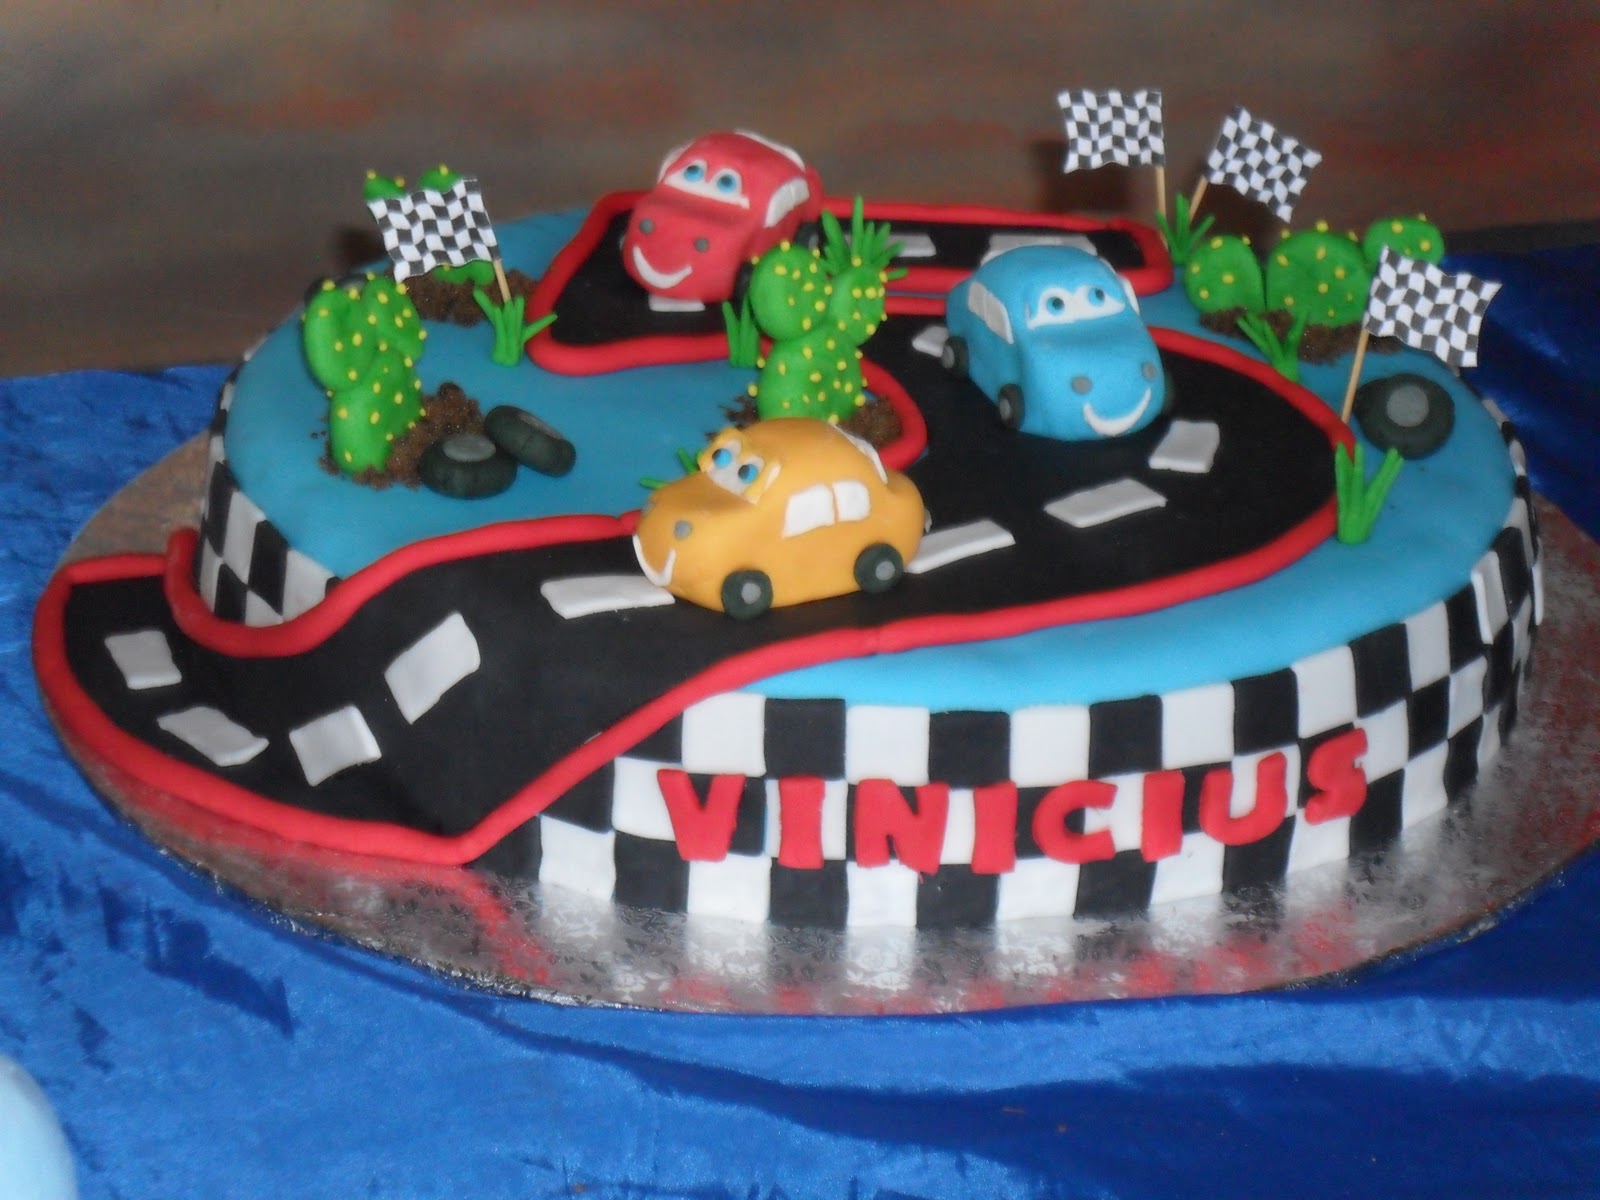 Mara Medeiros Arte em bolos e doces: Festa infantil com tema: Carros